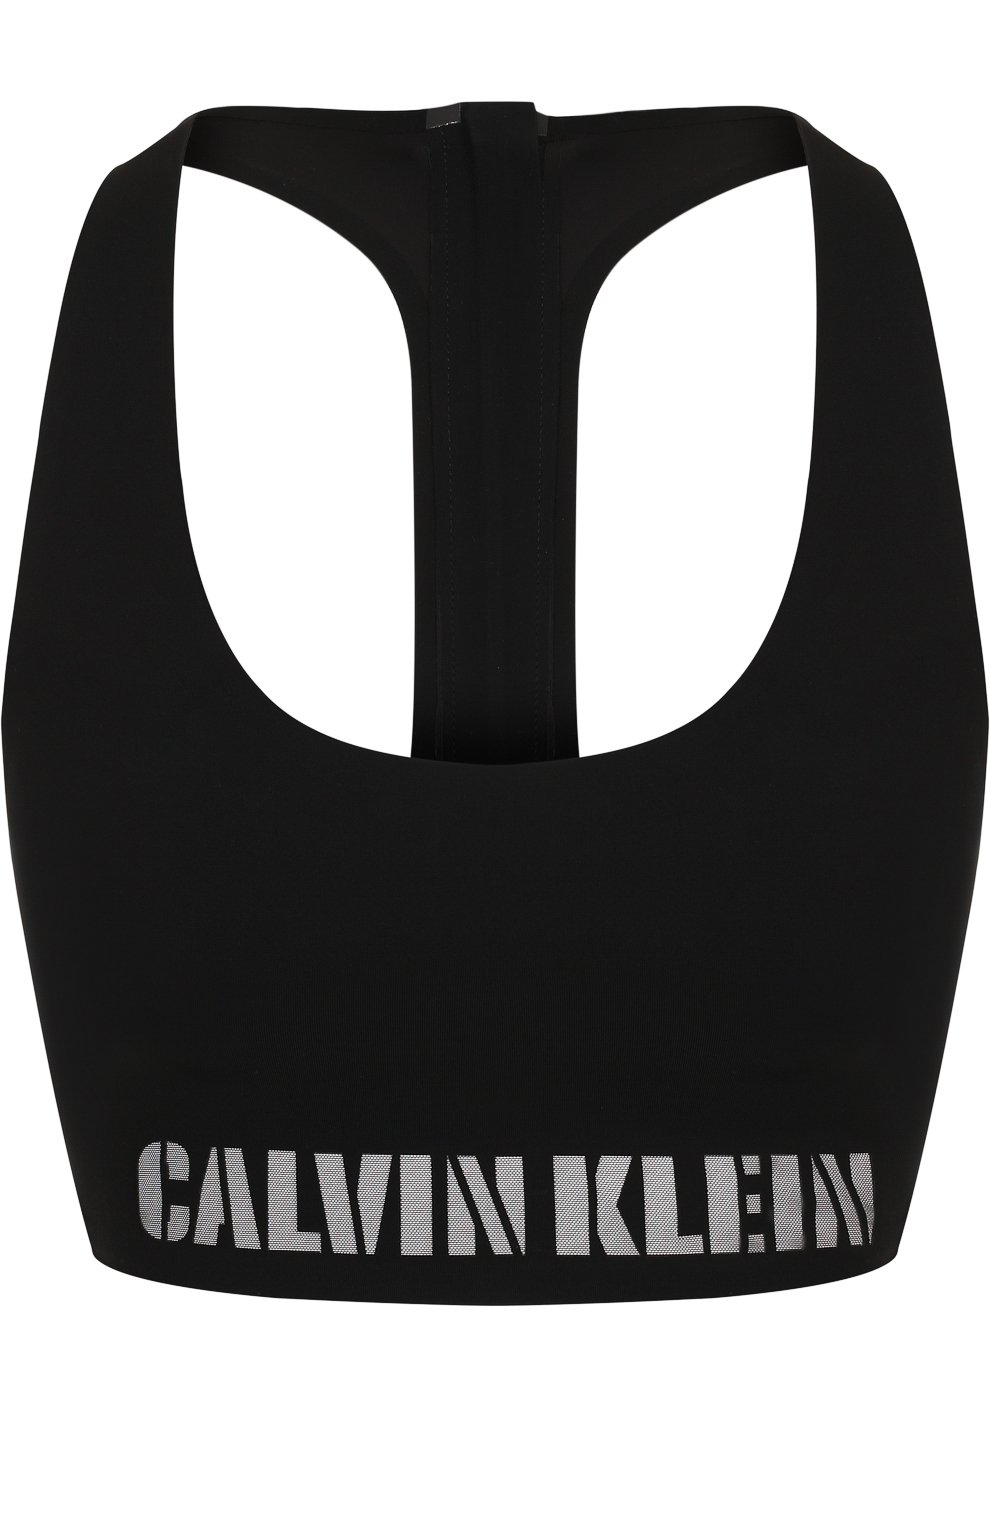 Женский черный спортивный бюстгальтер с логотипом бренда CALVIN